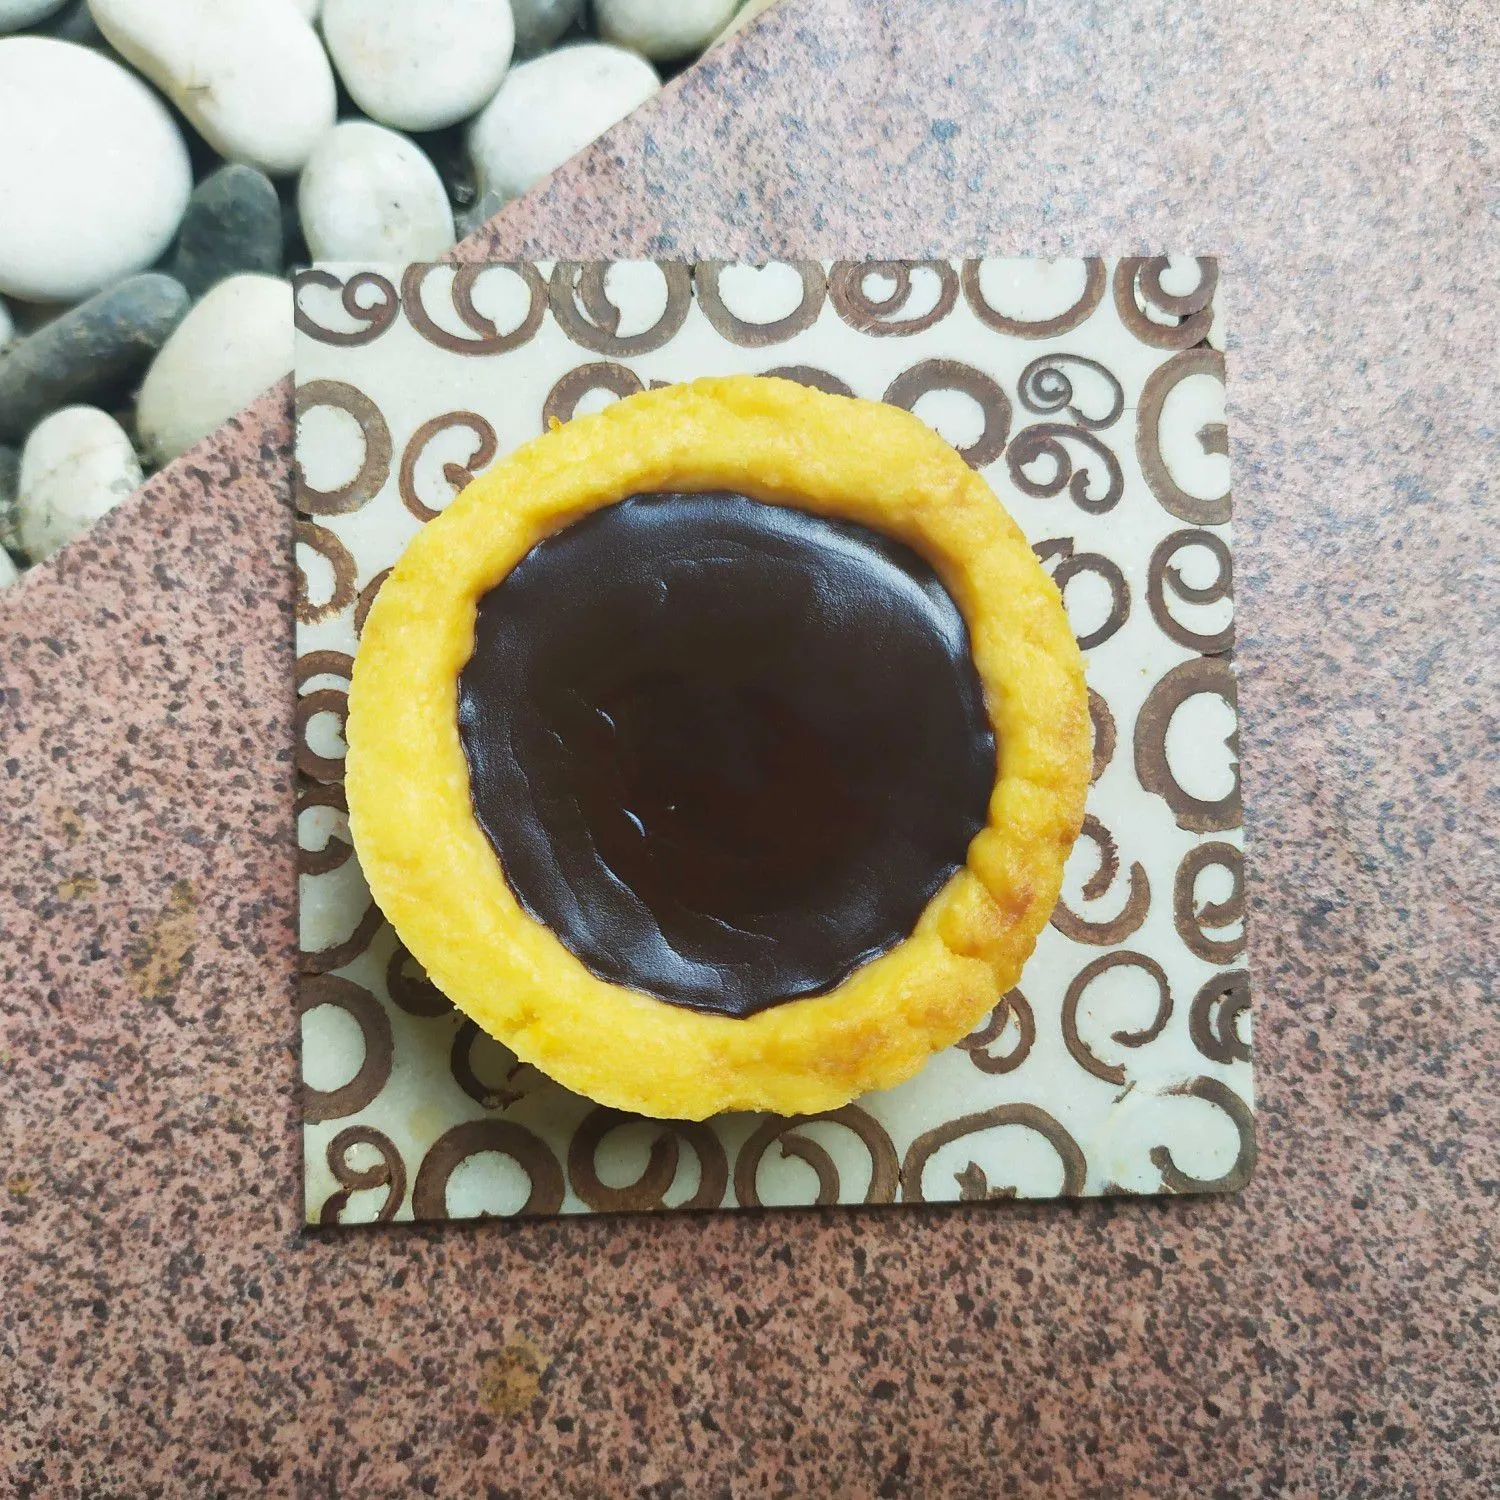 Choco Pie #JagoMasakMinggu2Periode2